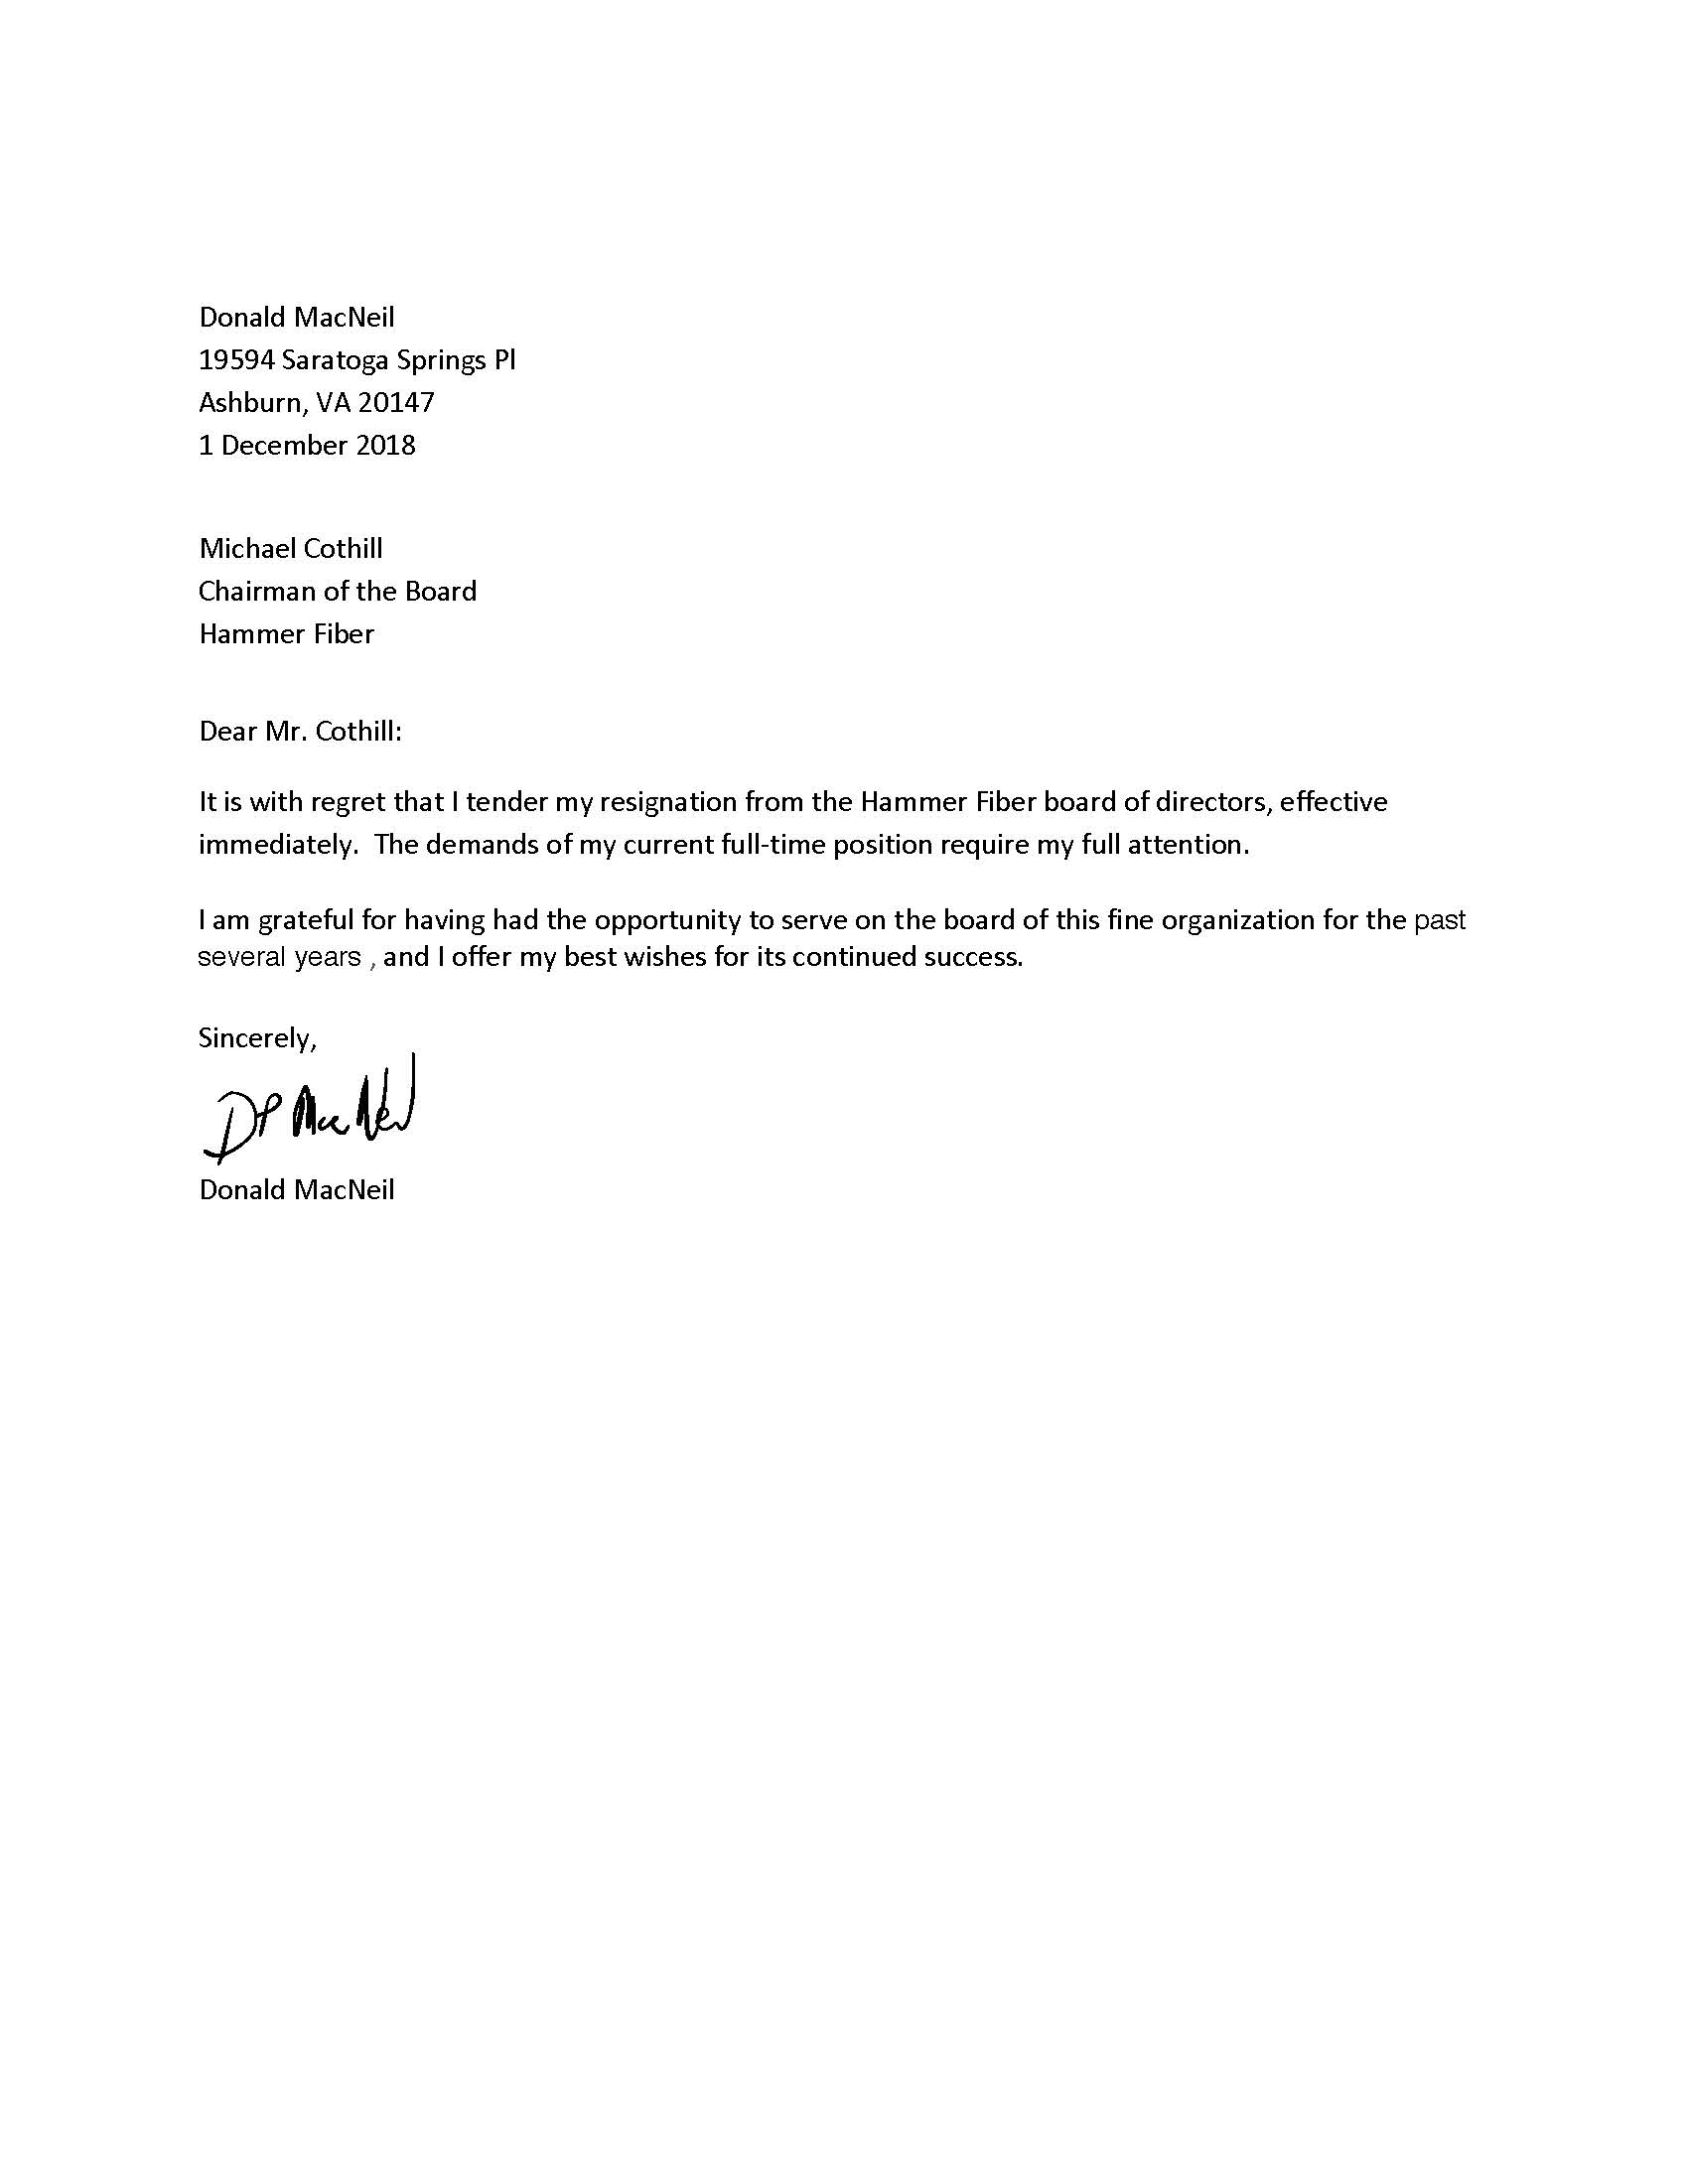 I Am Tendering My Resignation - Sample Resignation Letter